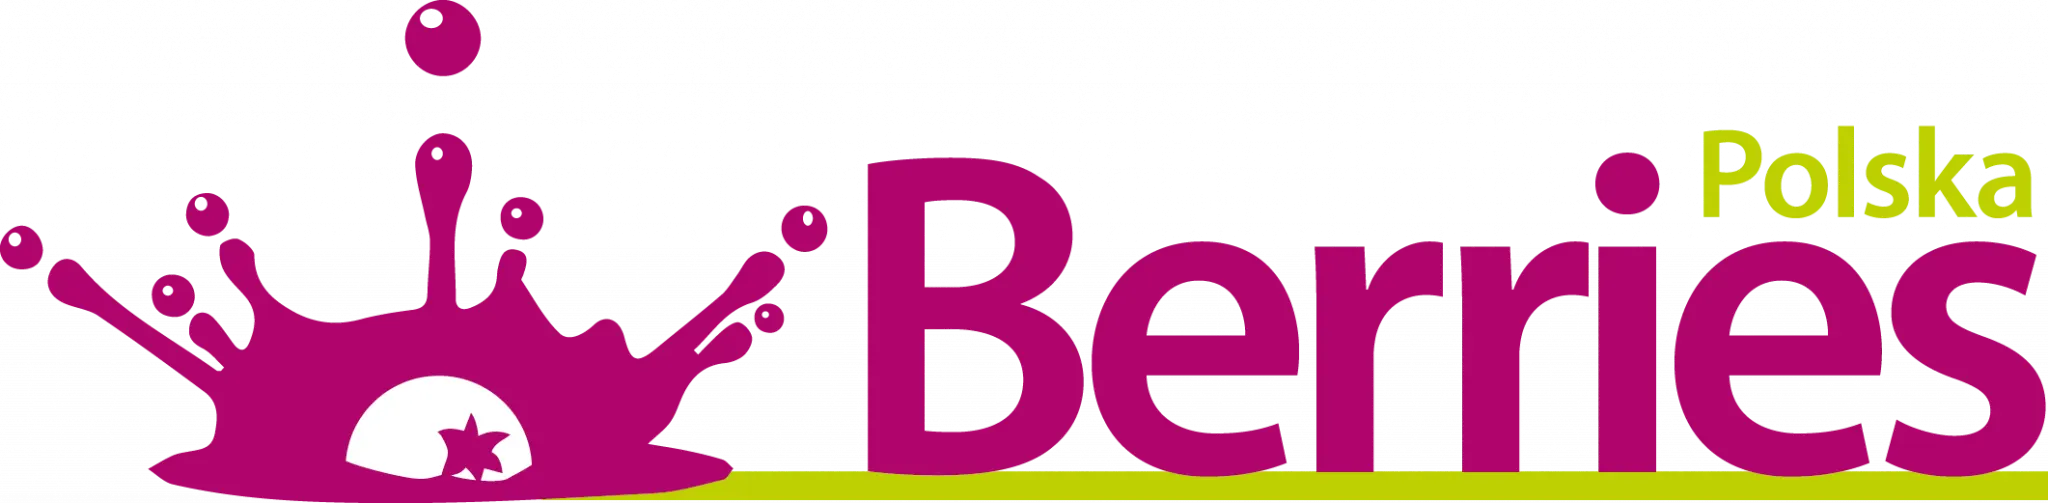 logo berries sklep